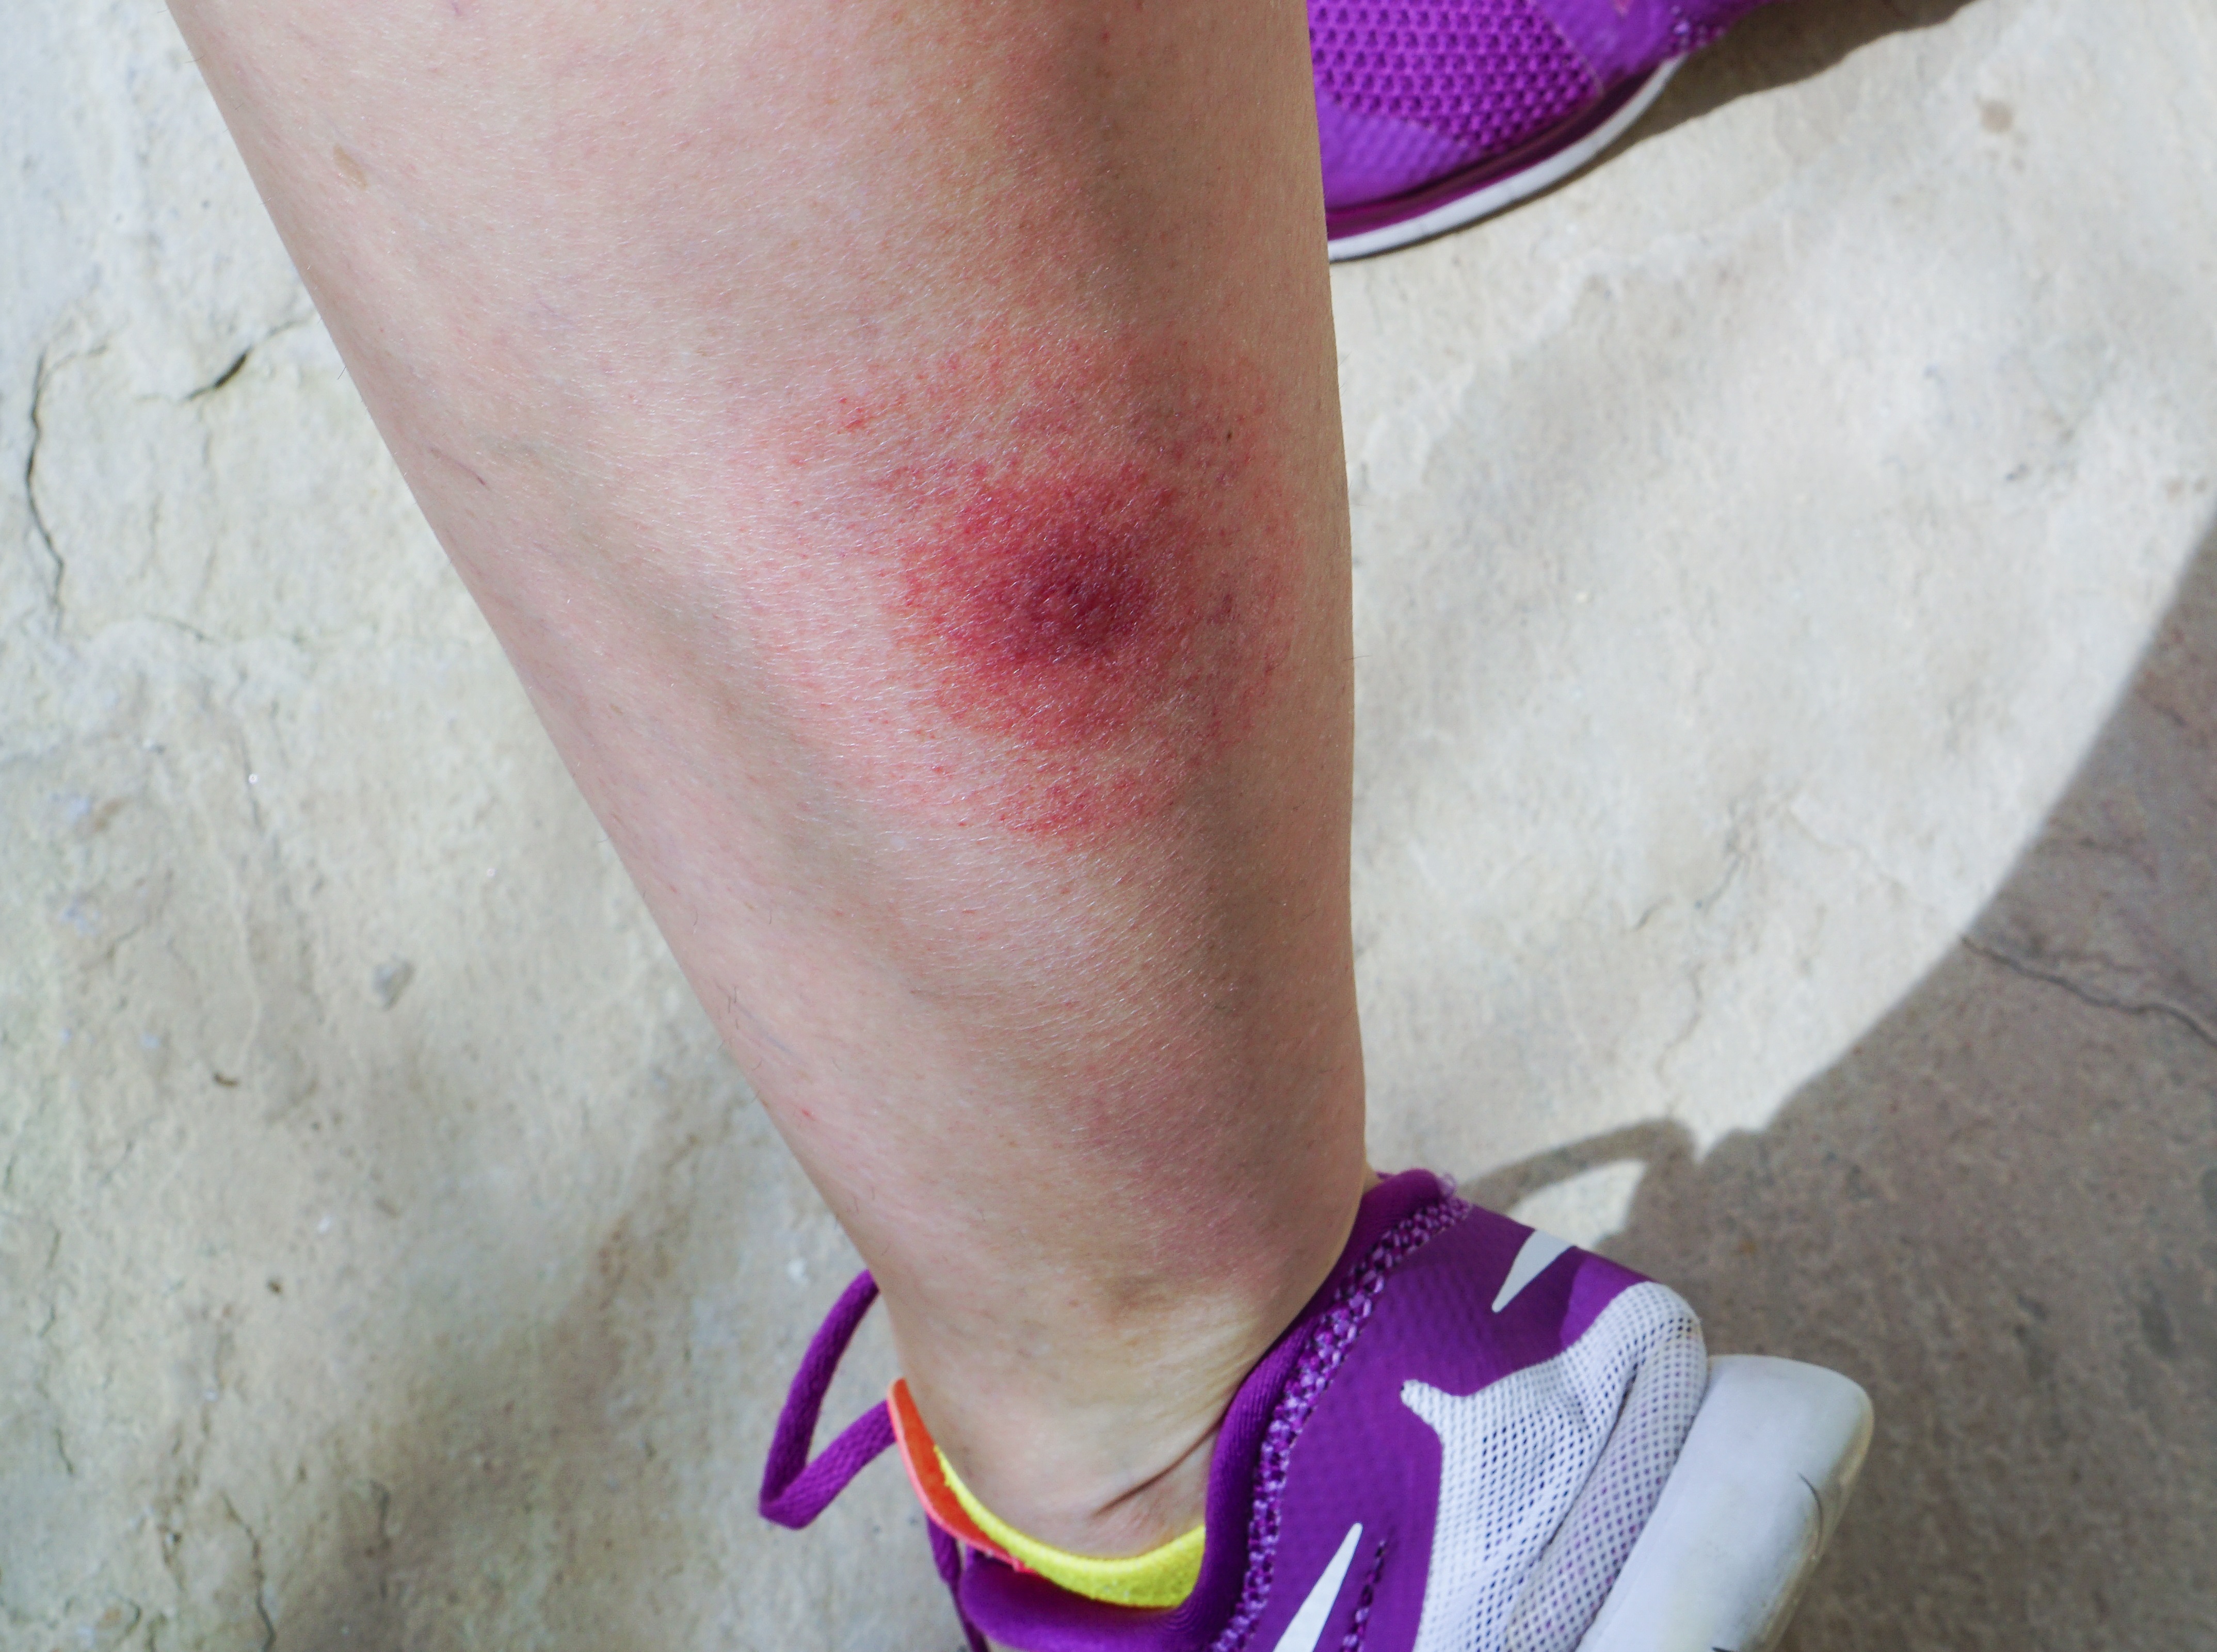 Typical Lyme disease bullseye rash on leg (istock/PA)